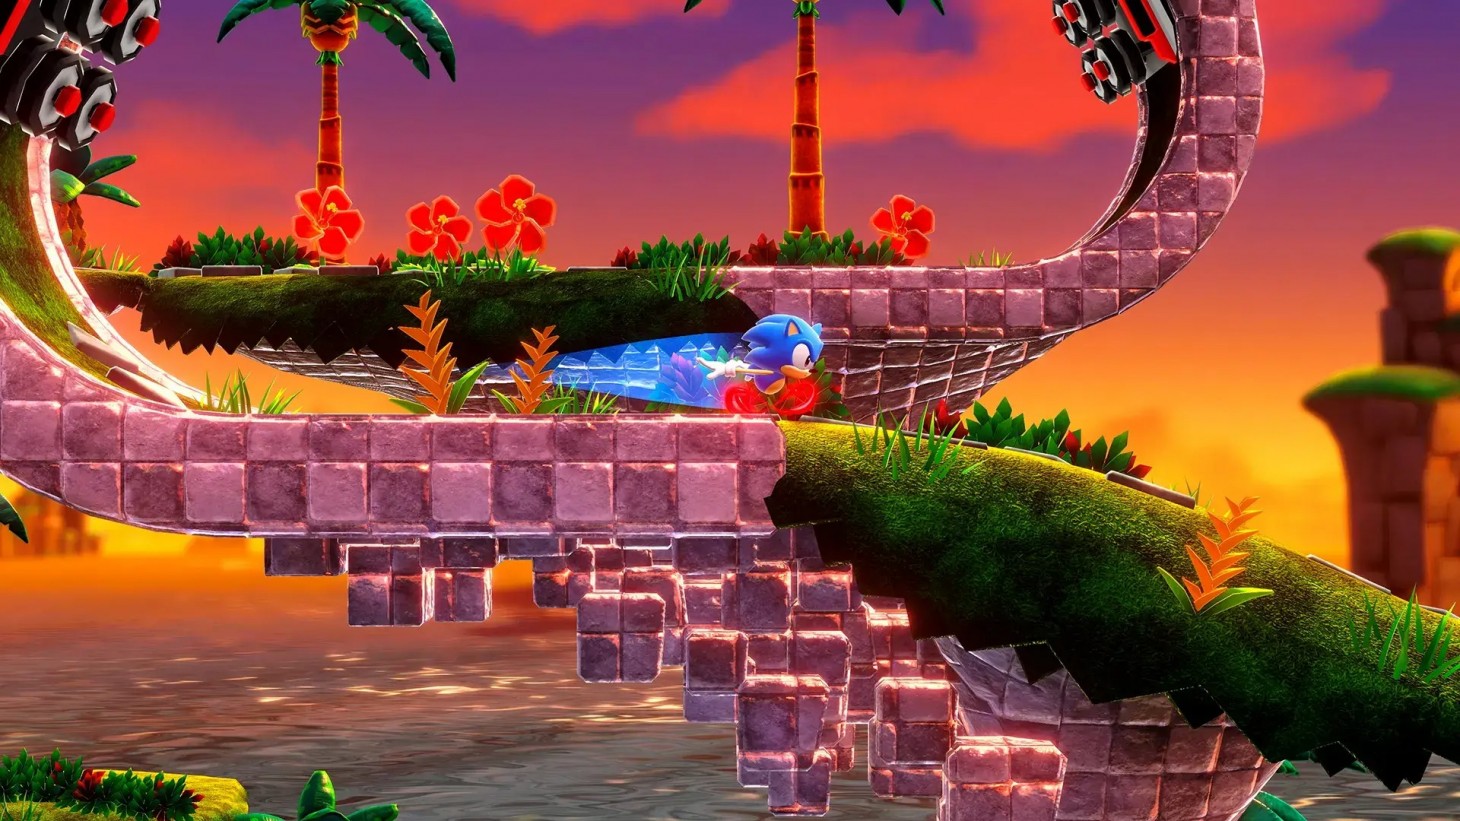 Arms e Sonic Forces são destaques nos trailers de jogos da semana